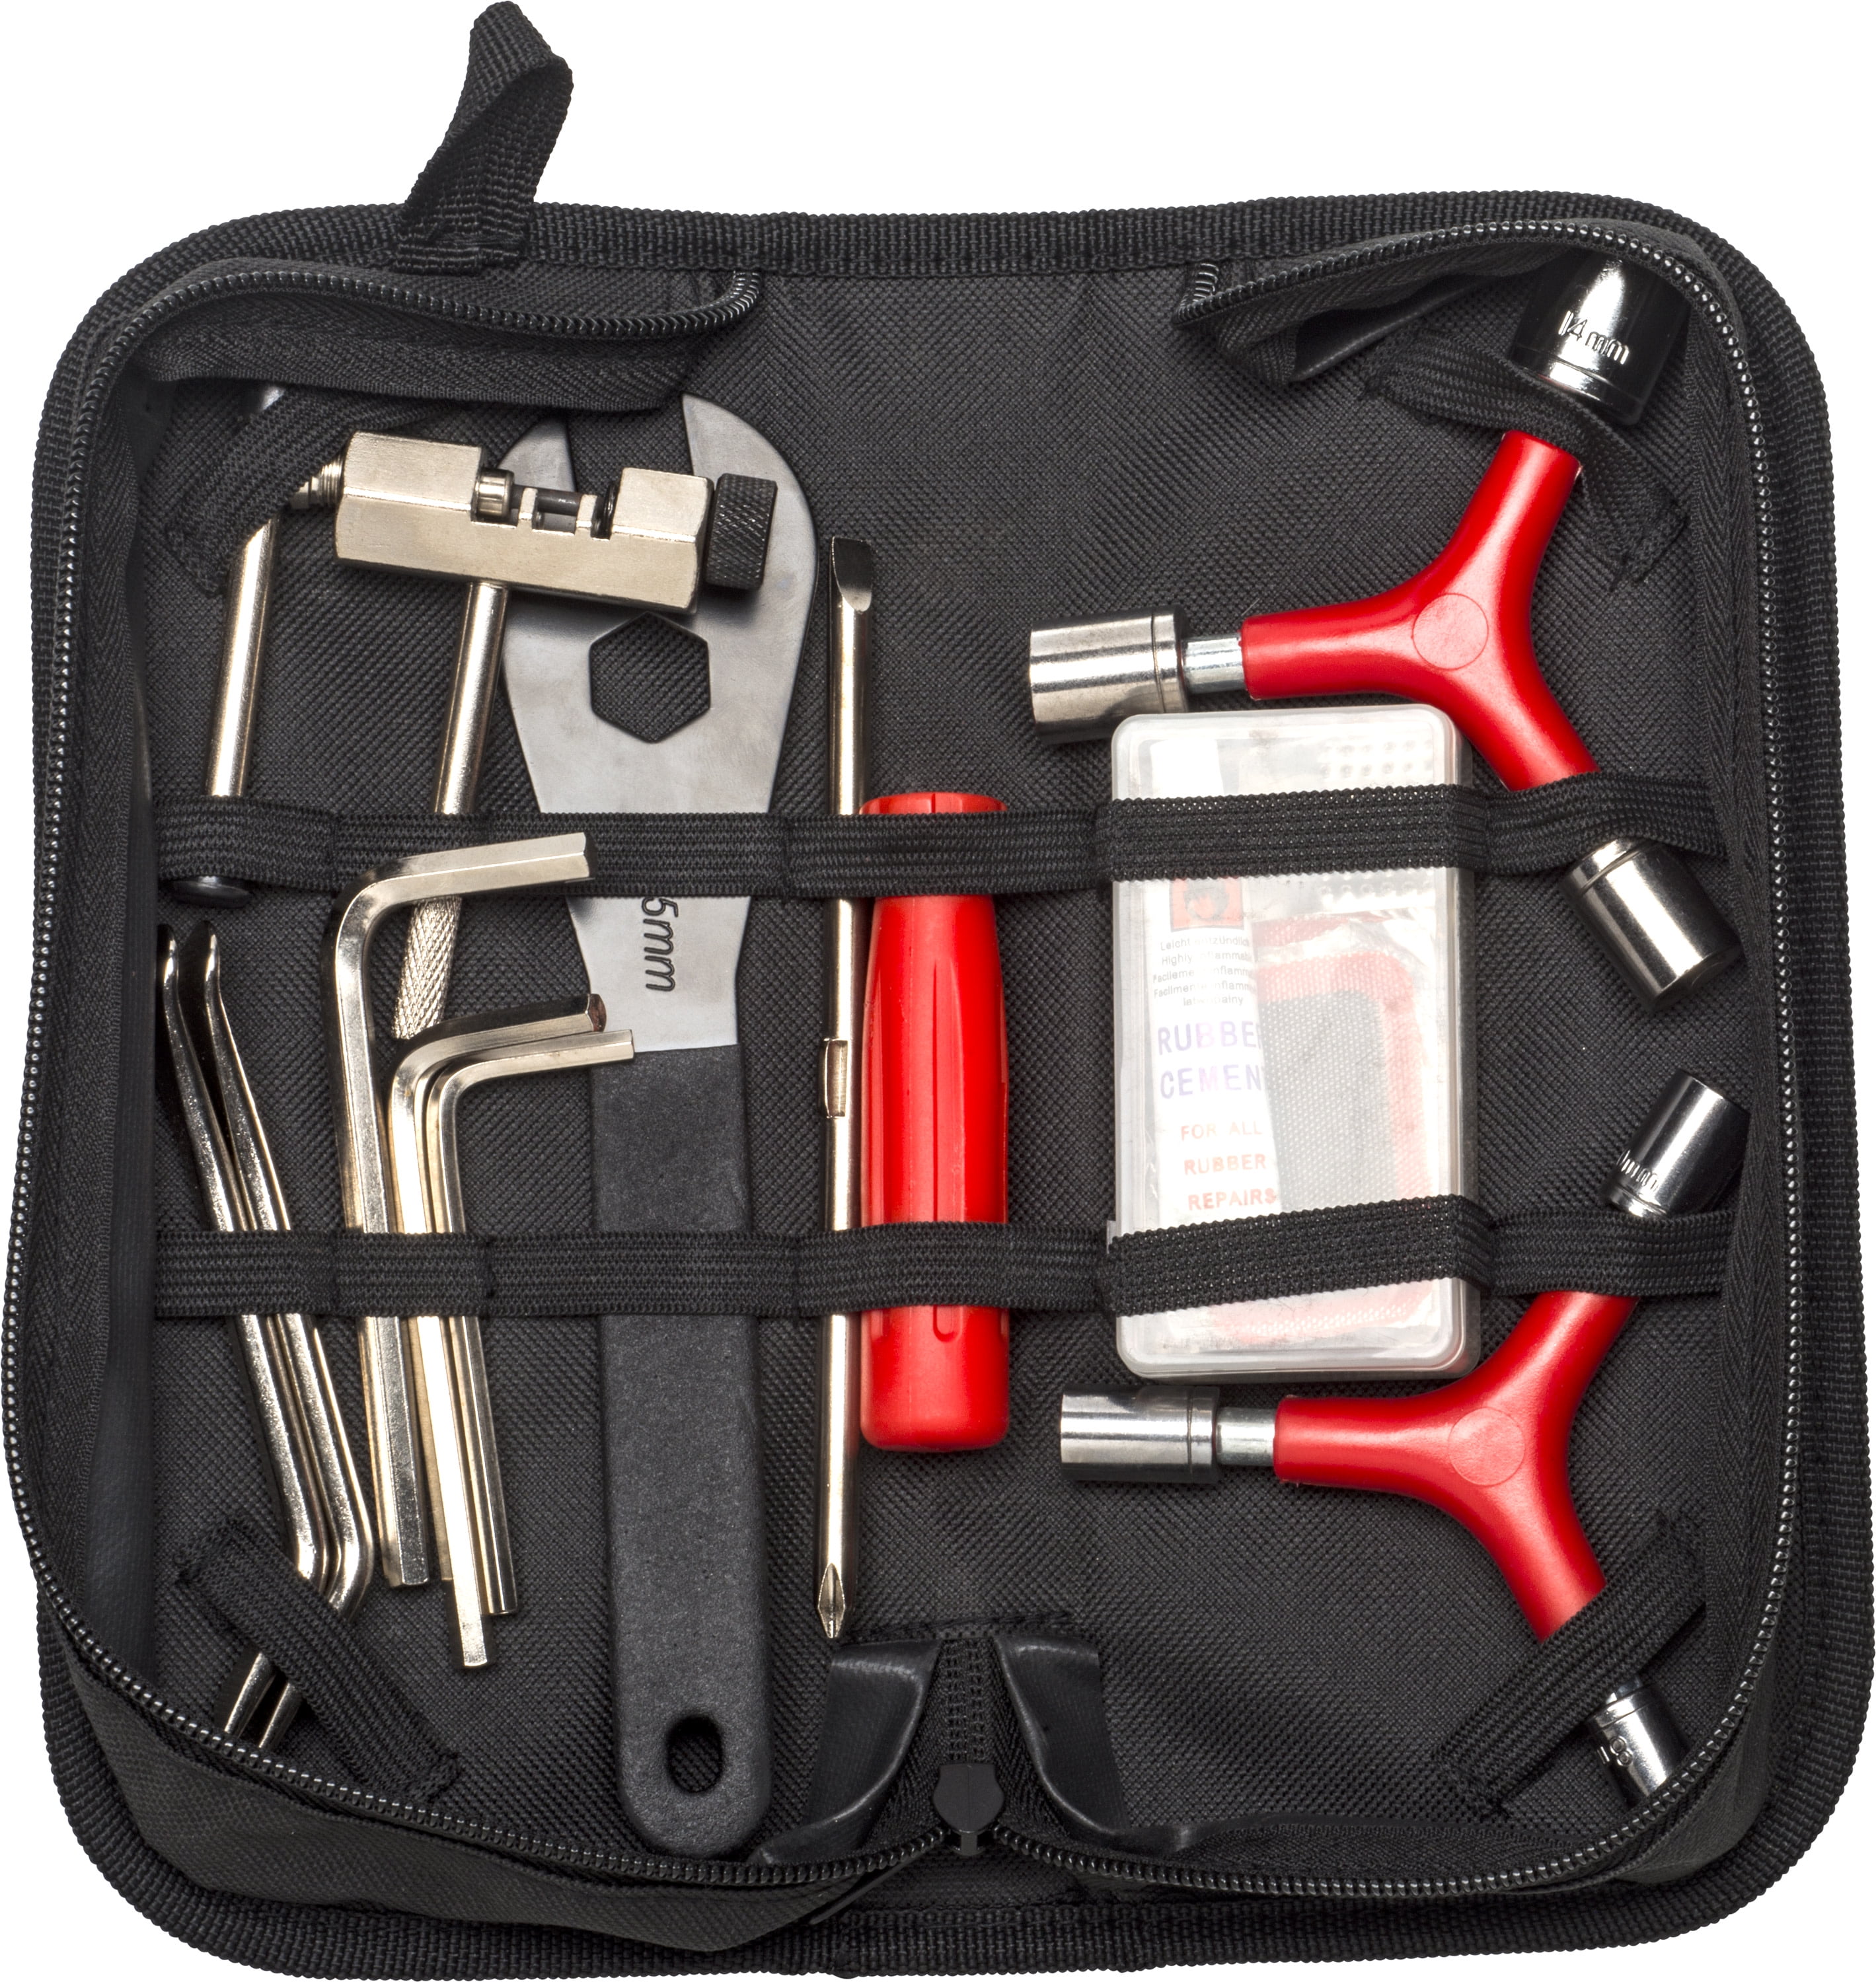 Bike Repair Tool Kits,Bicycle Chain Tool Set,Portable,Universal Chain Spli E0Y8 